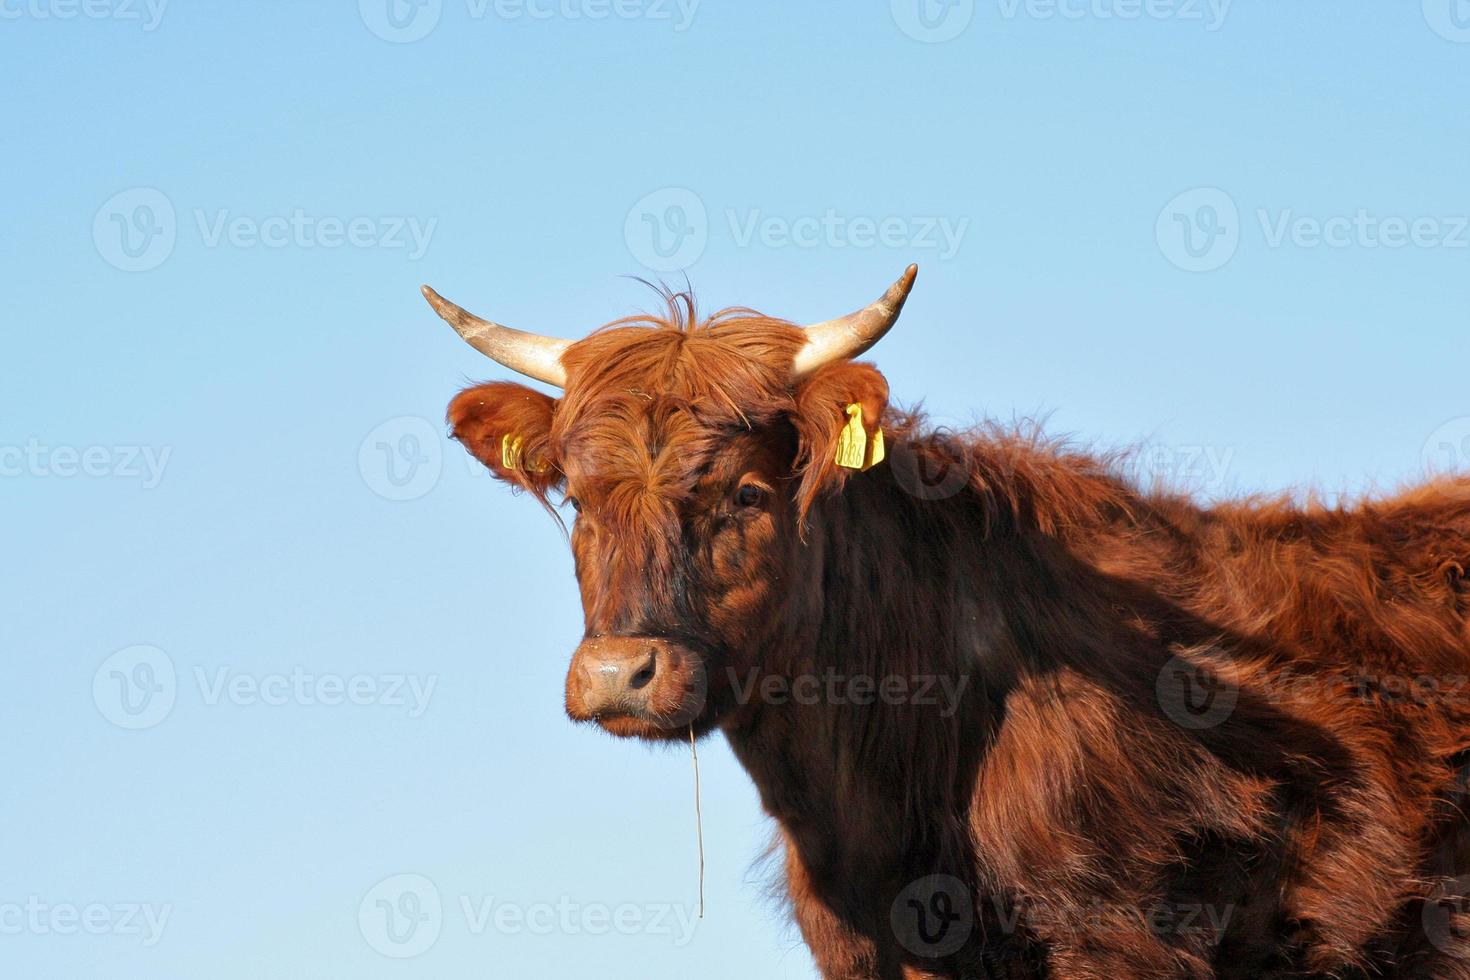 Cow photo